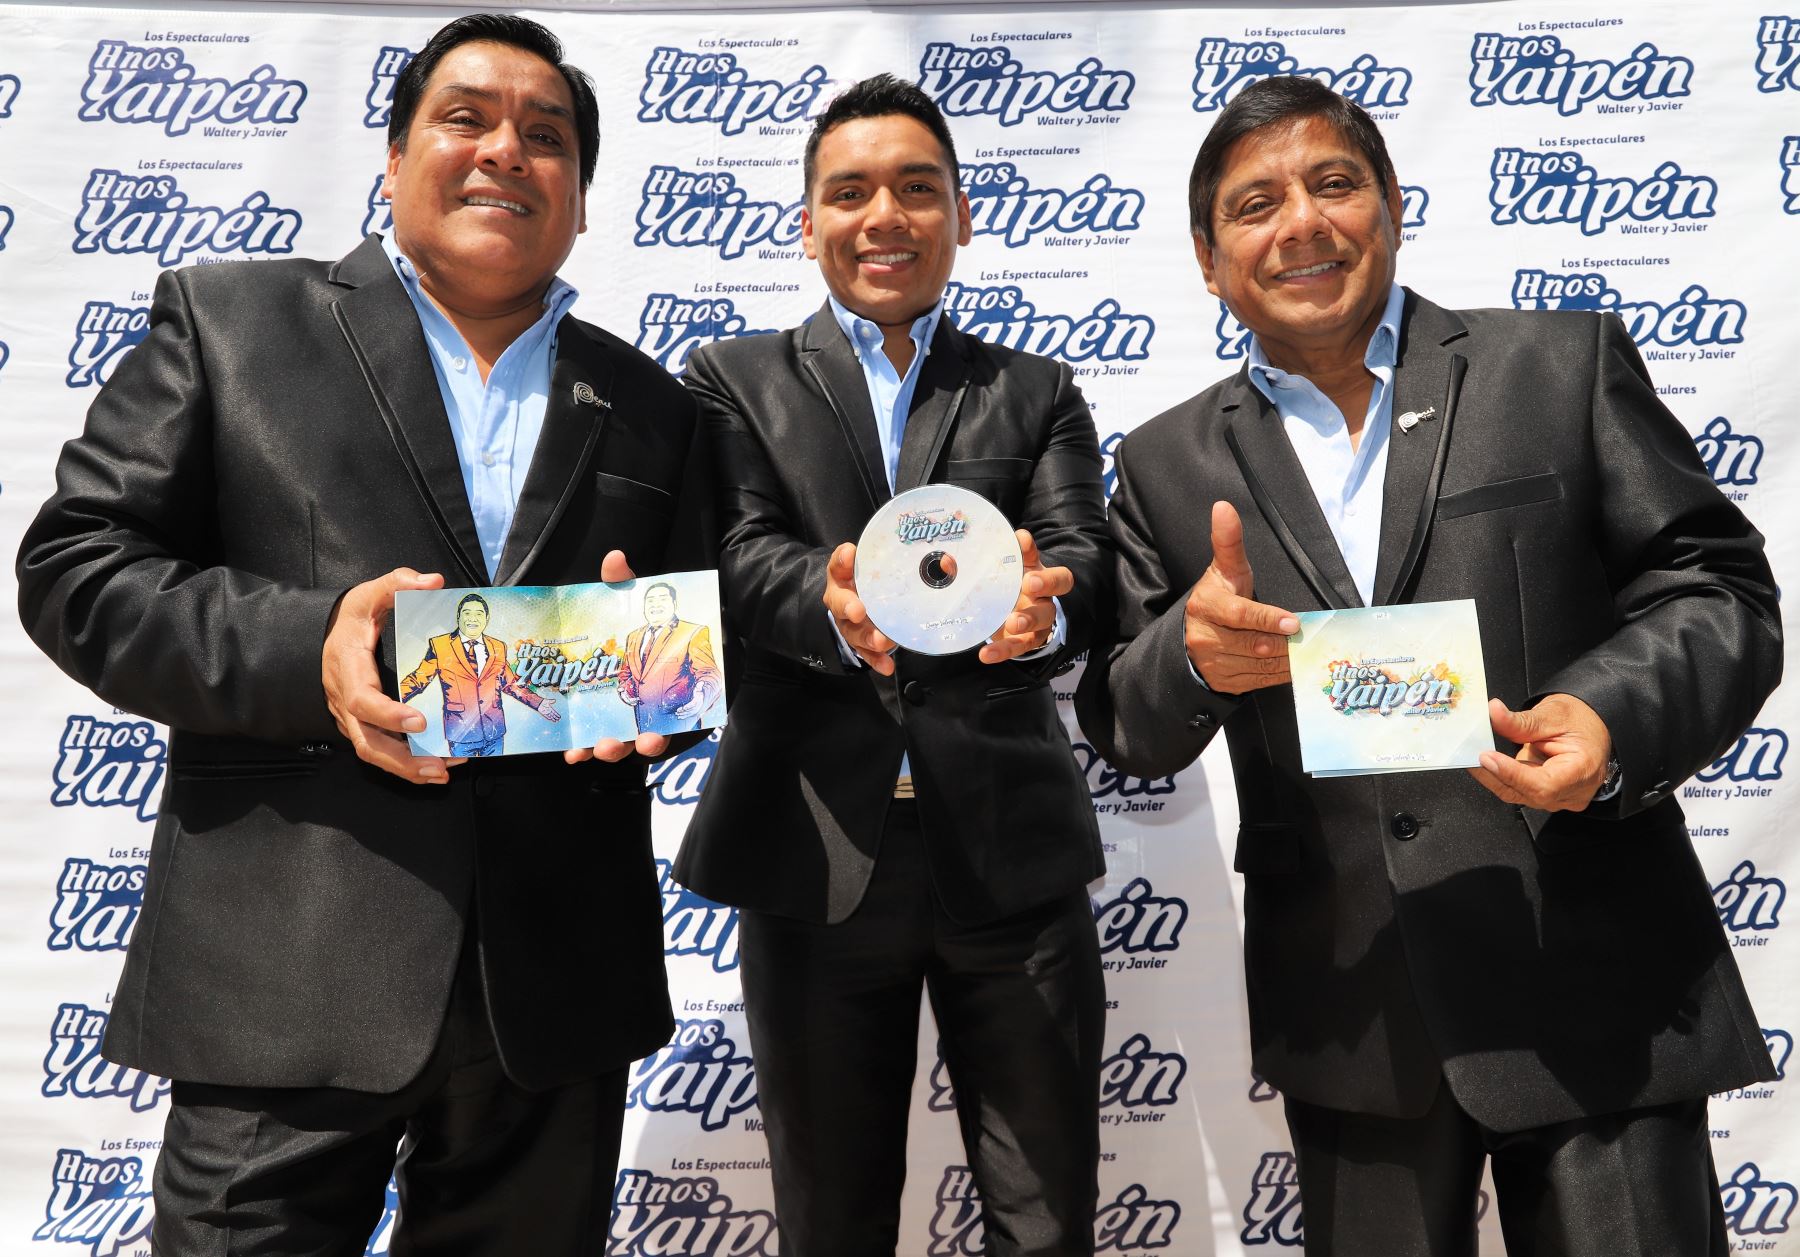 Presentaron su disco con el que esperan ser preseleccionados para el Grammy Latino.